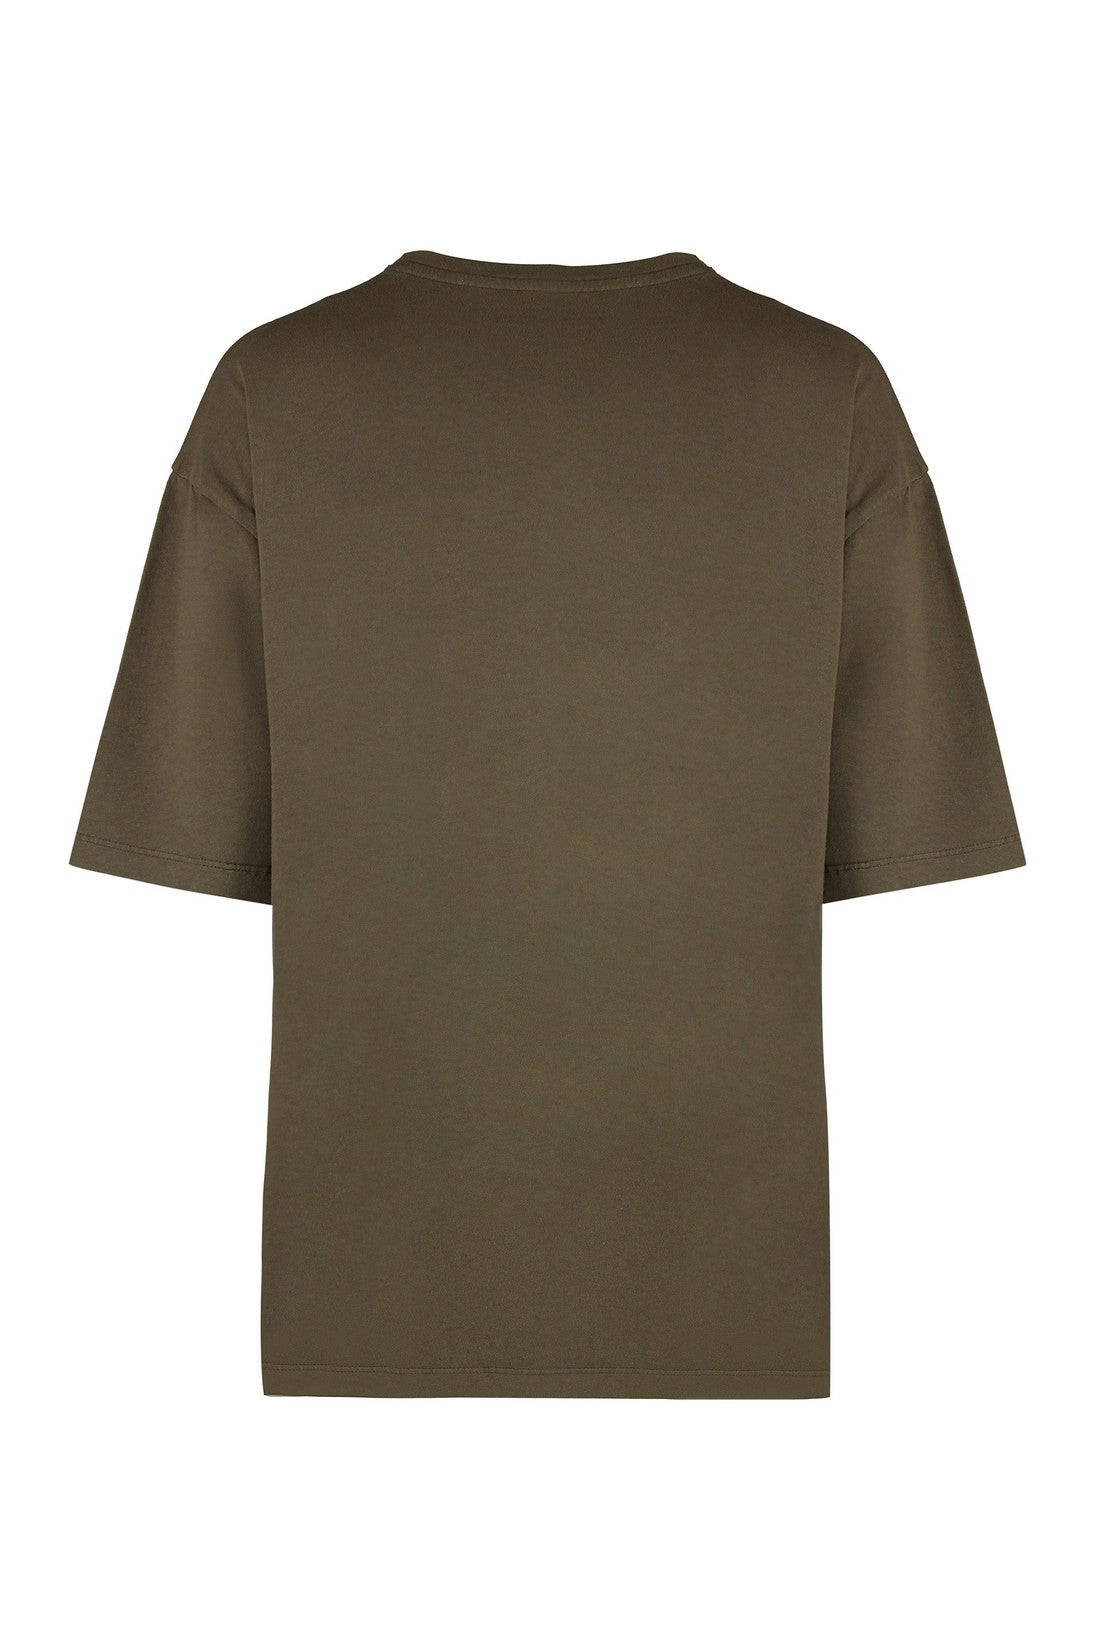 ZADIG&VOLTAIRE-OUTLET-SALE-Cotton crew-neck T-shirt-ARCHIVIST